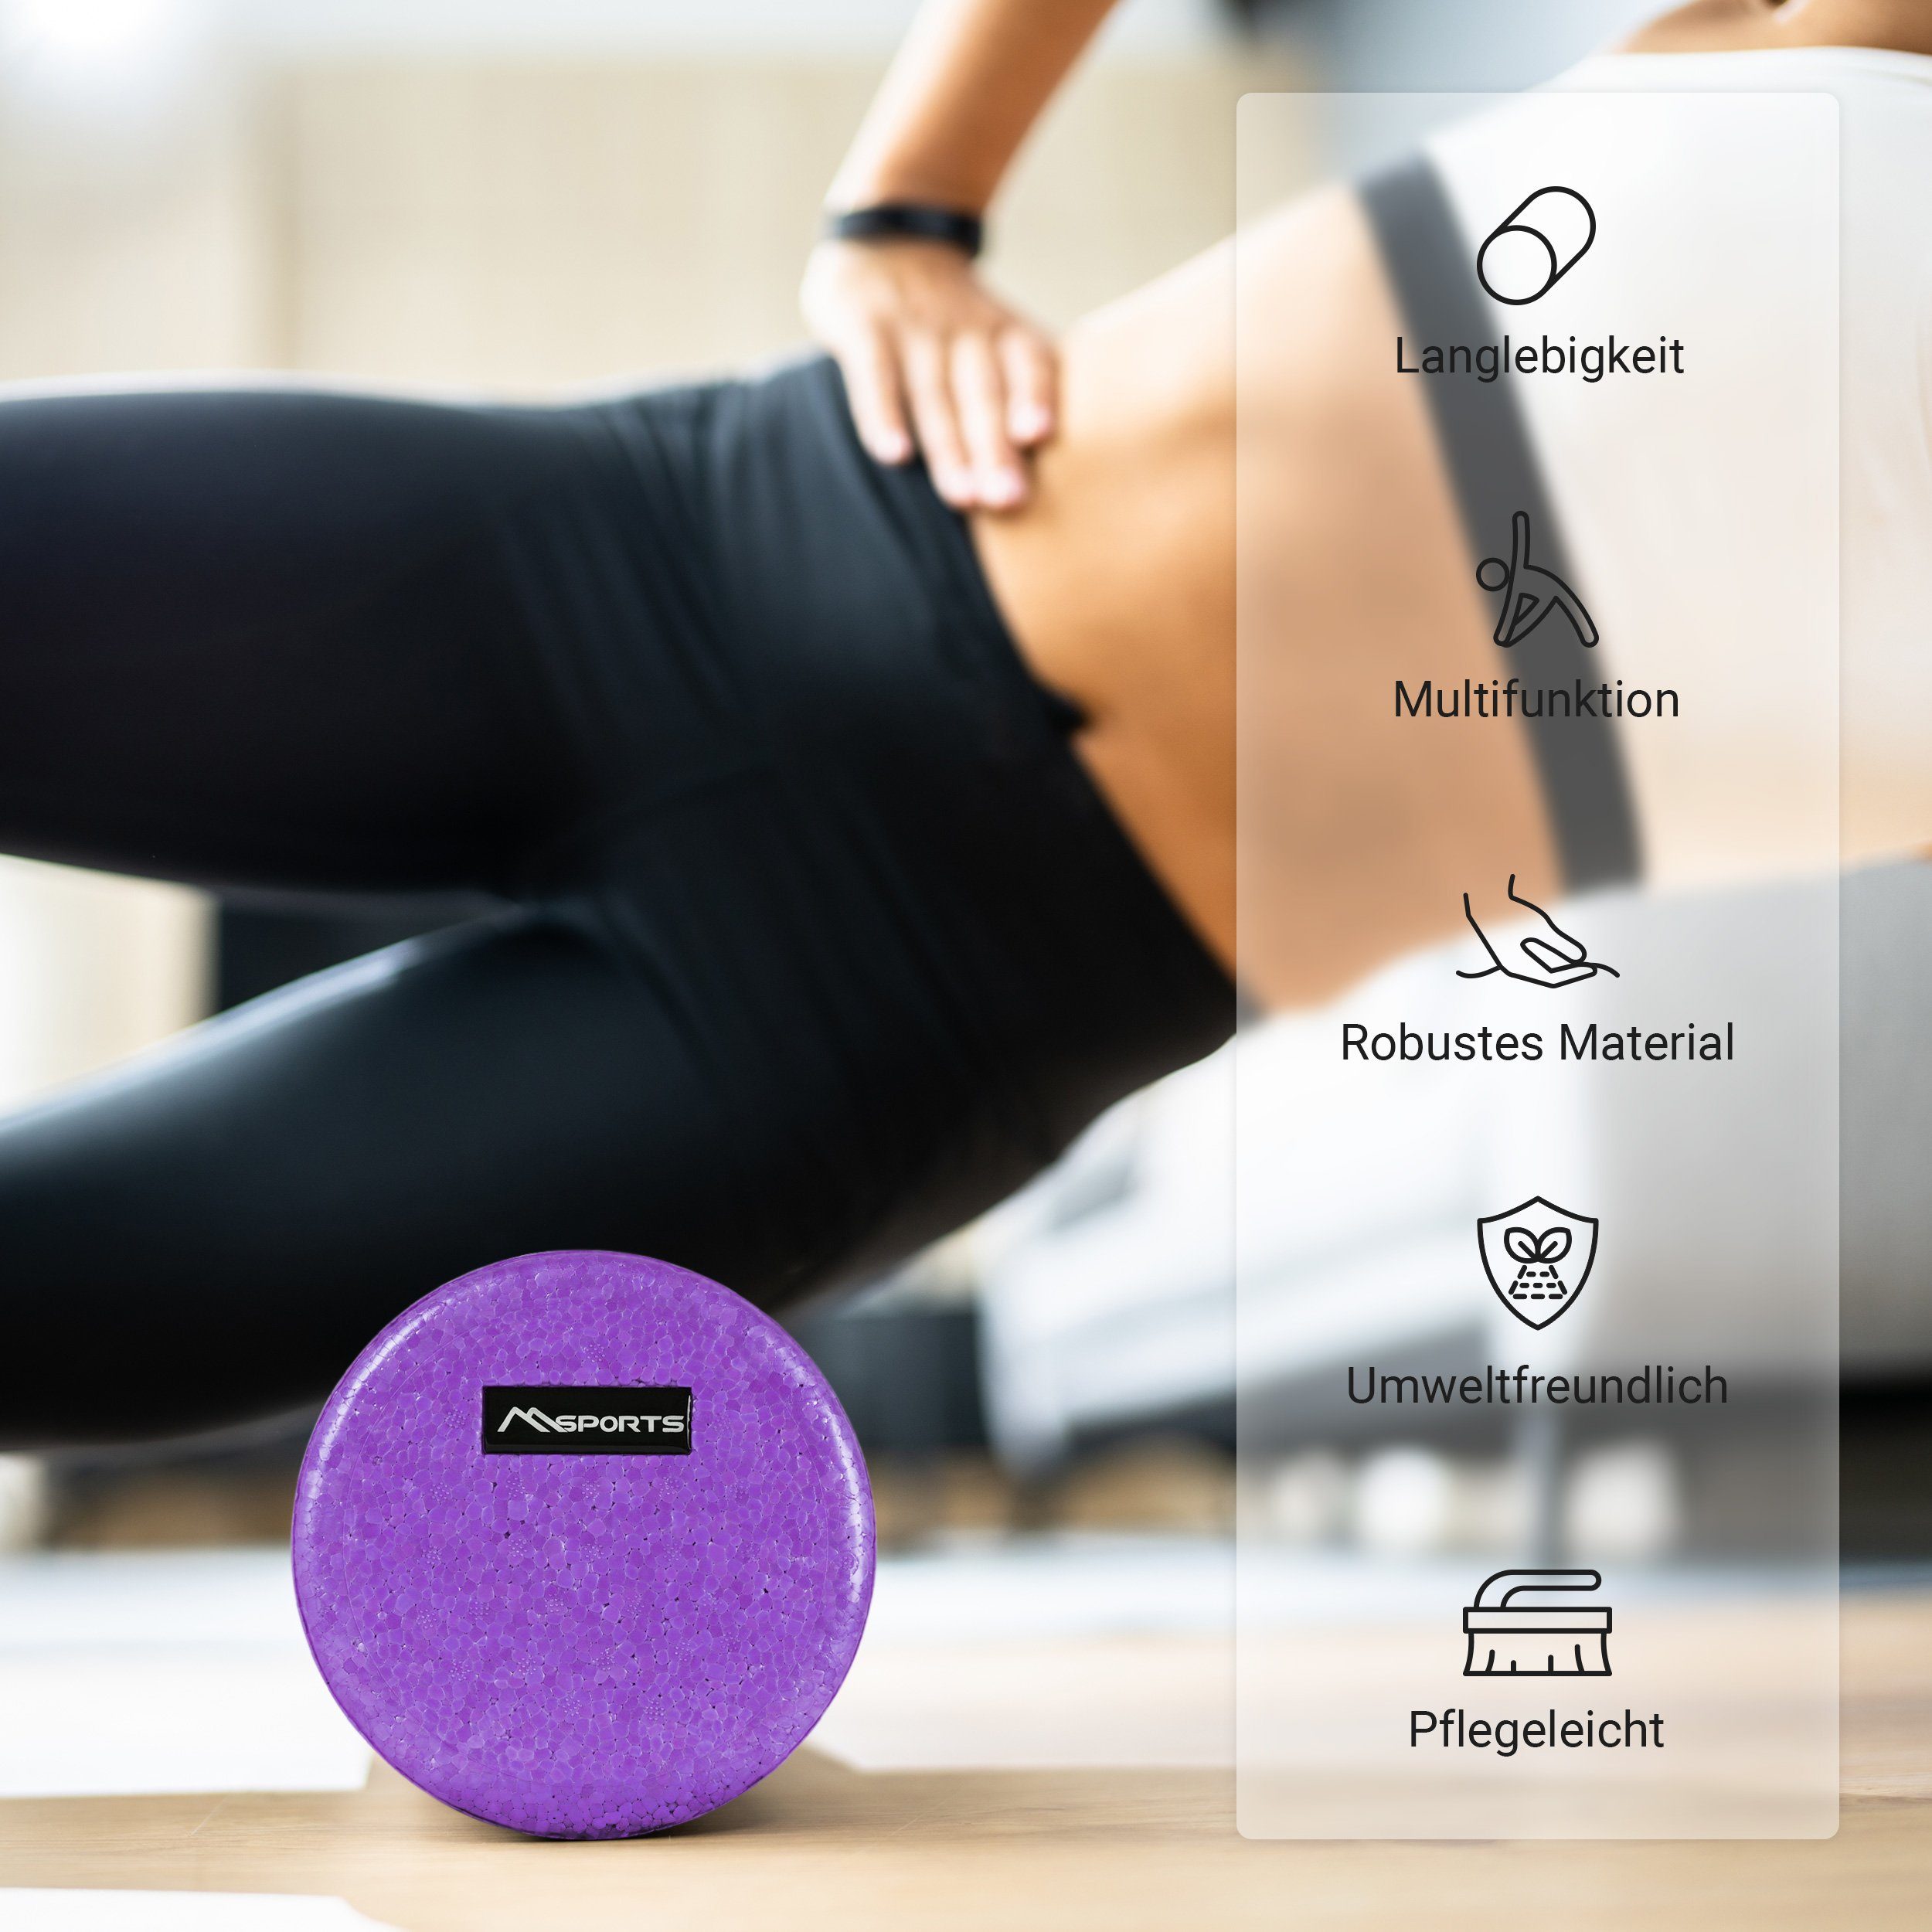 Massageball + + Massagerolle 3er Peanutball Violett Set FASZIENSET - MSports® Massagerolle